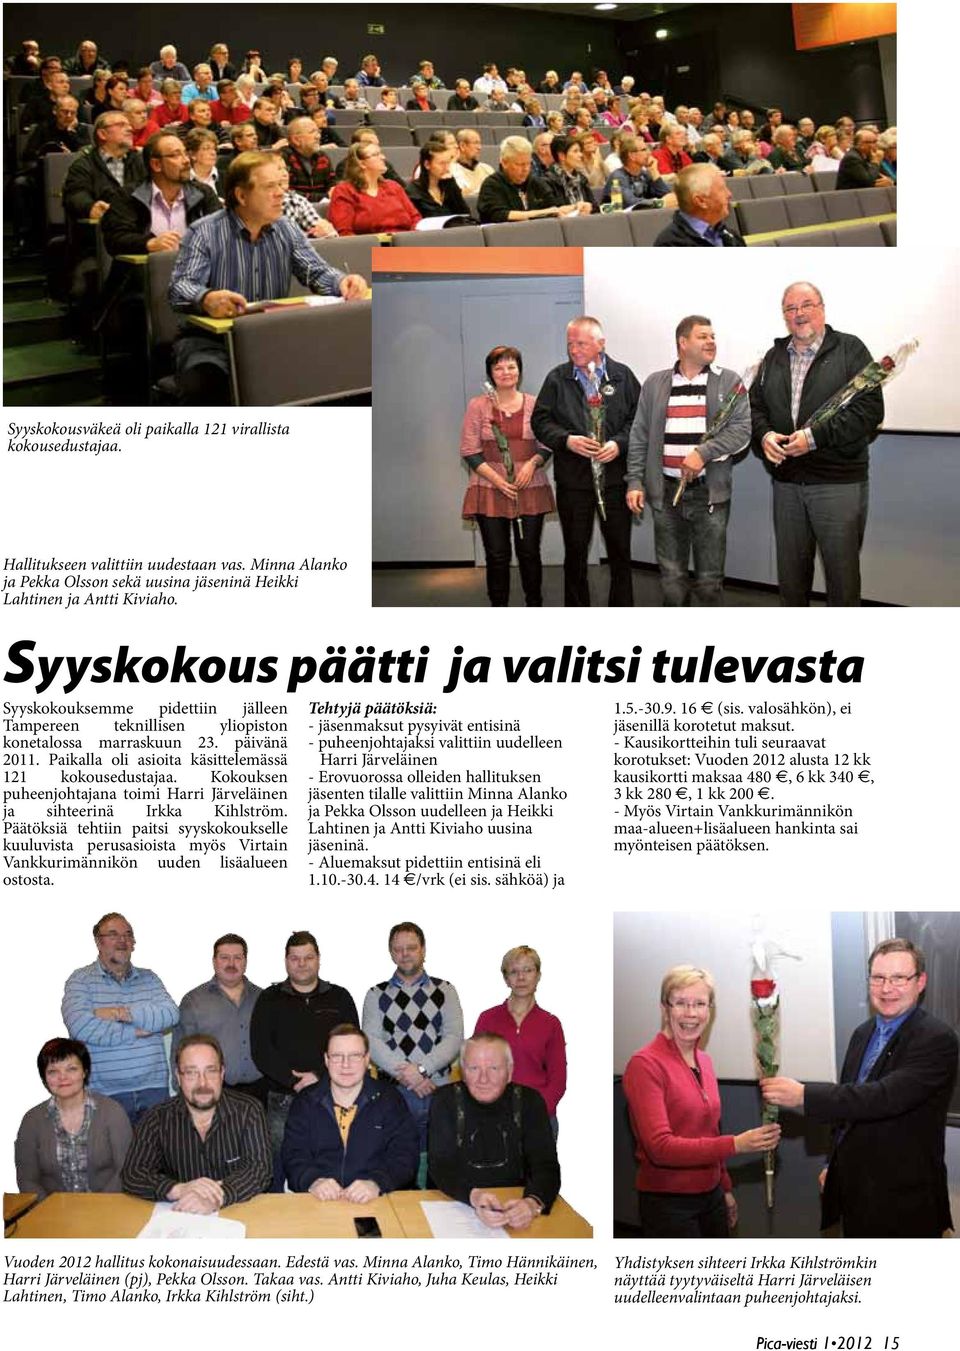 Paikalla oli asioita käsittelemässä 121 kokousedustajaa. Kokouksen puheenjohtajana toimi Harri Järveläinen ja sihteerinä Irkka Kihlström.